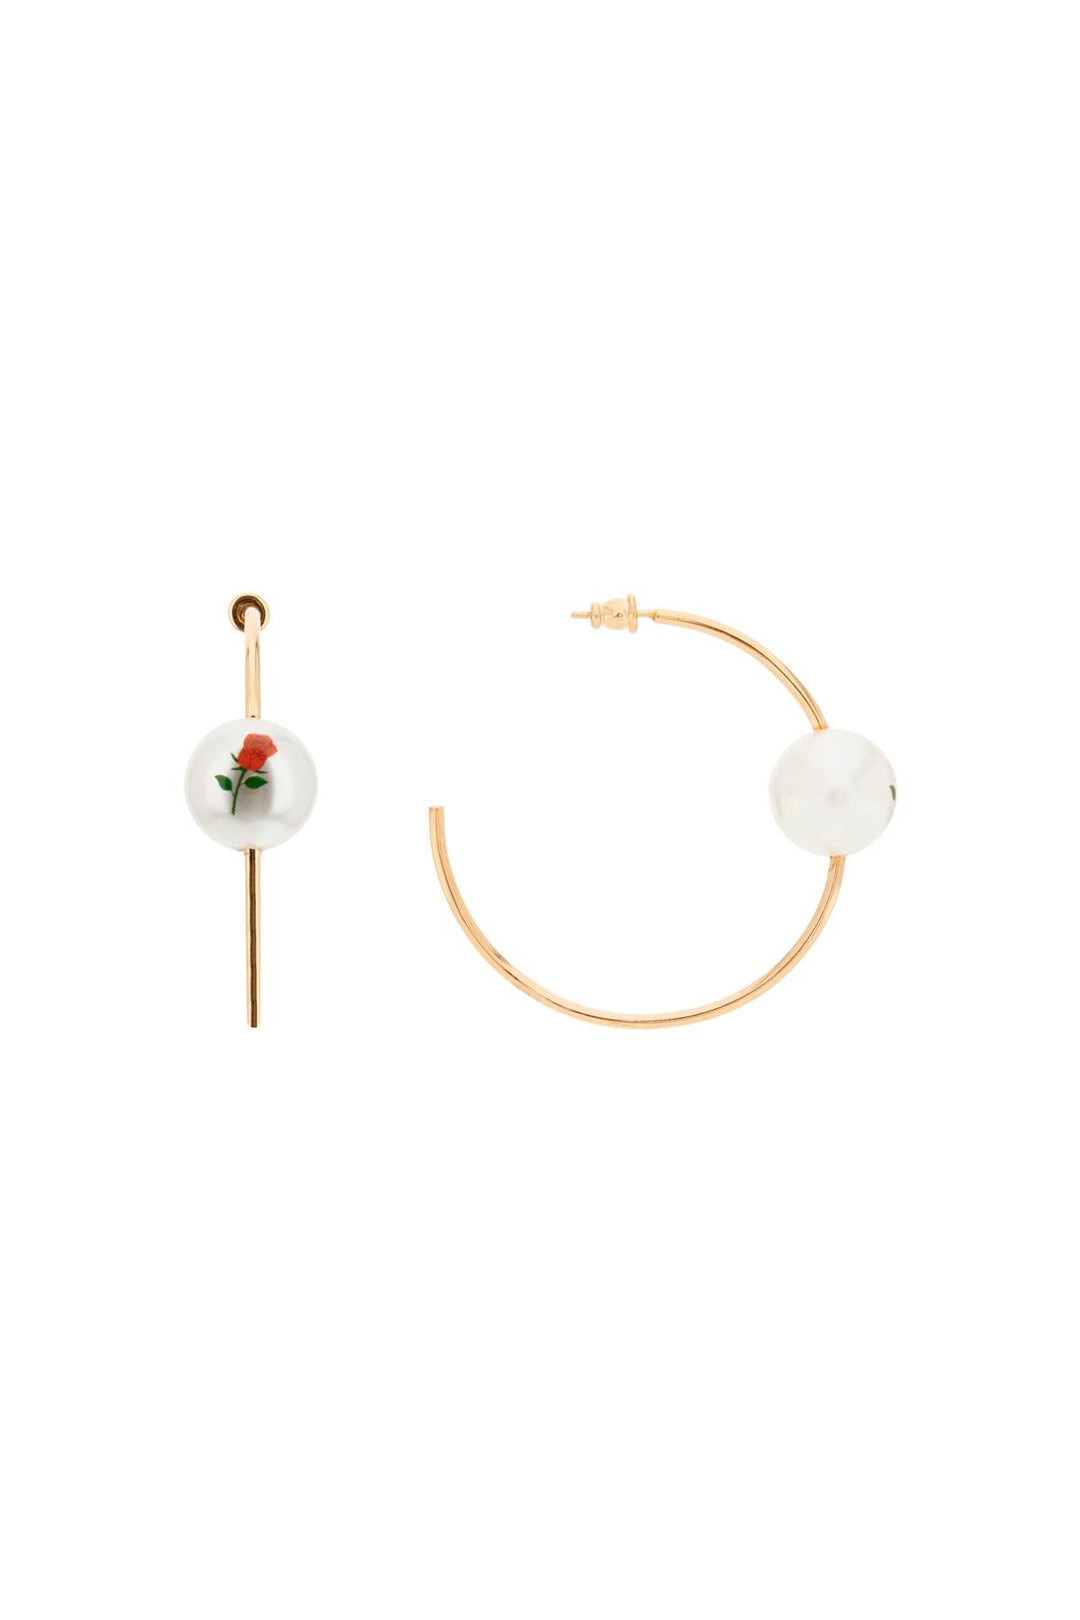 Saf Safu 'Pearl & Roses' Hoop Earrings   Oro